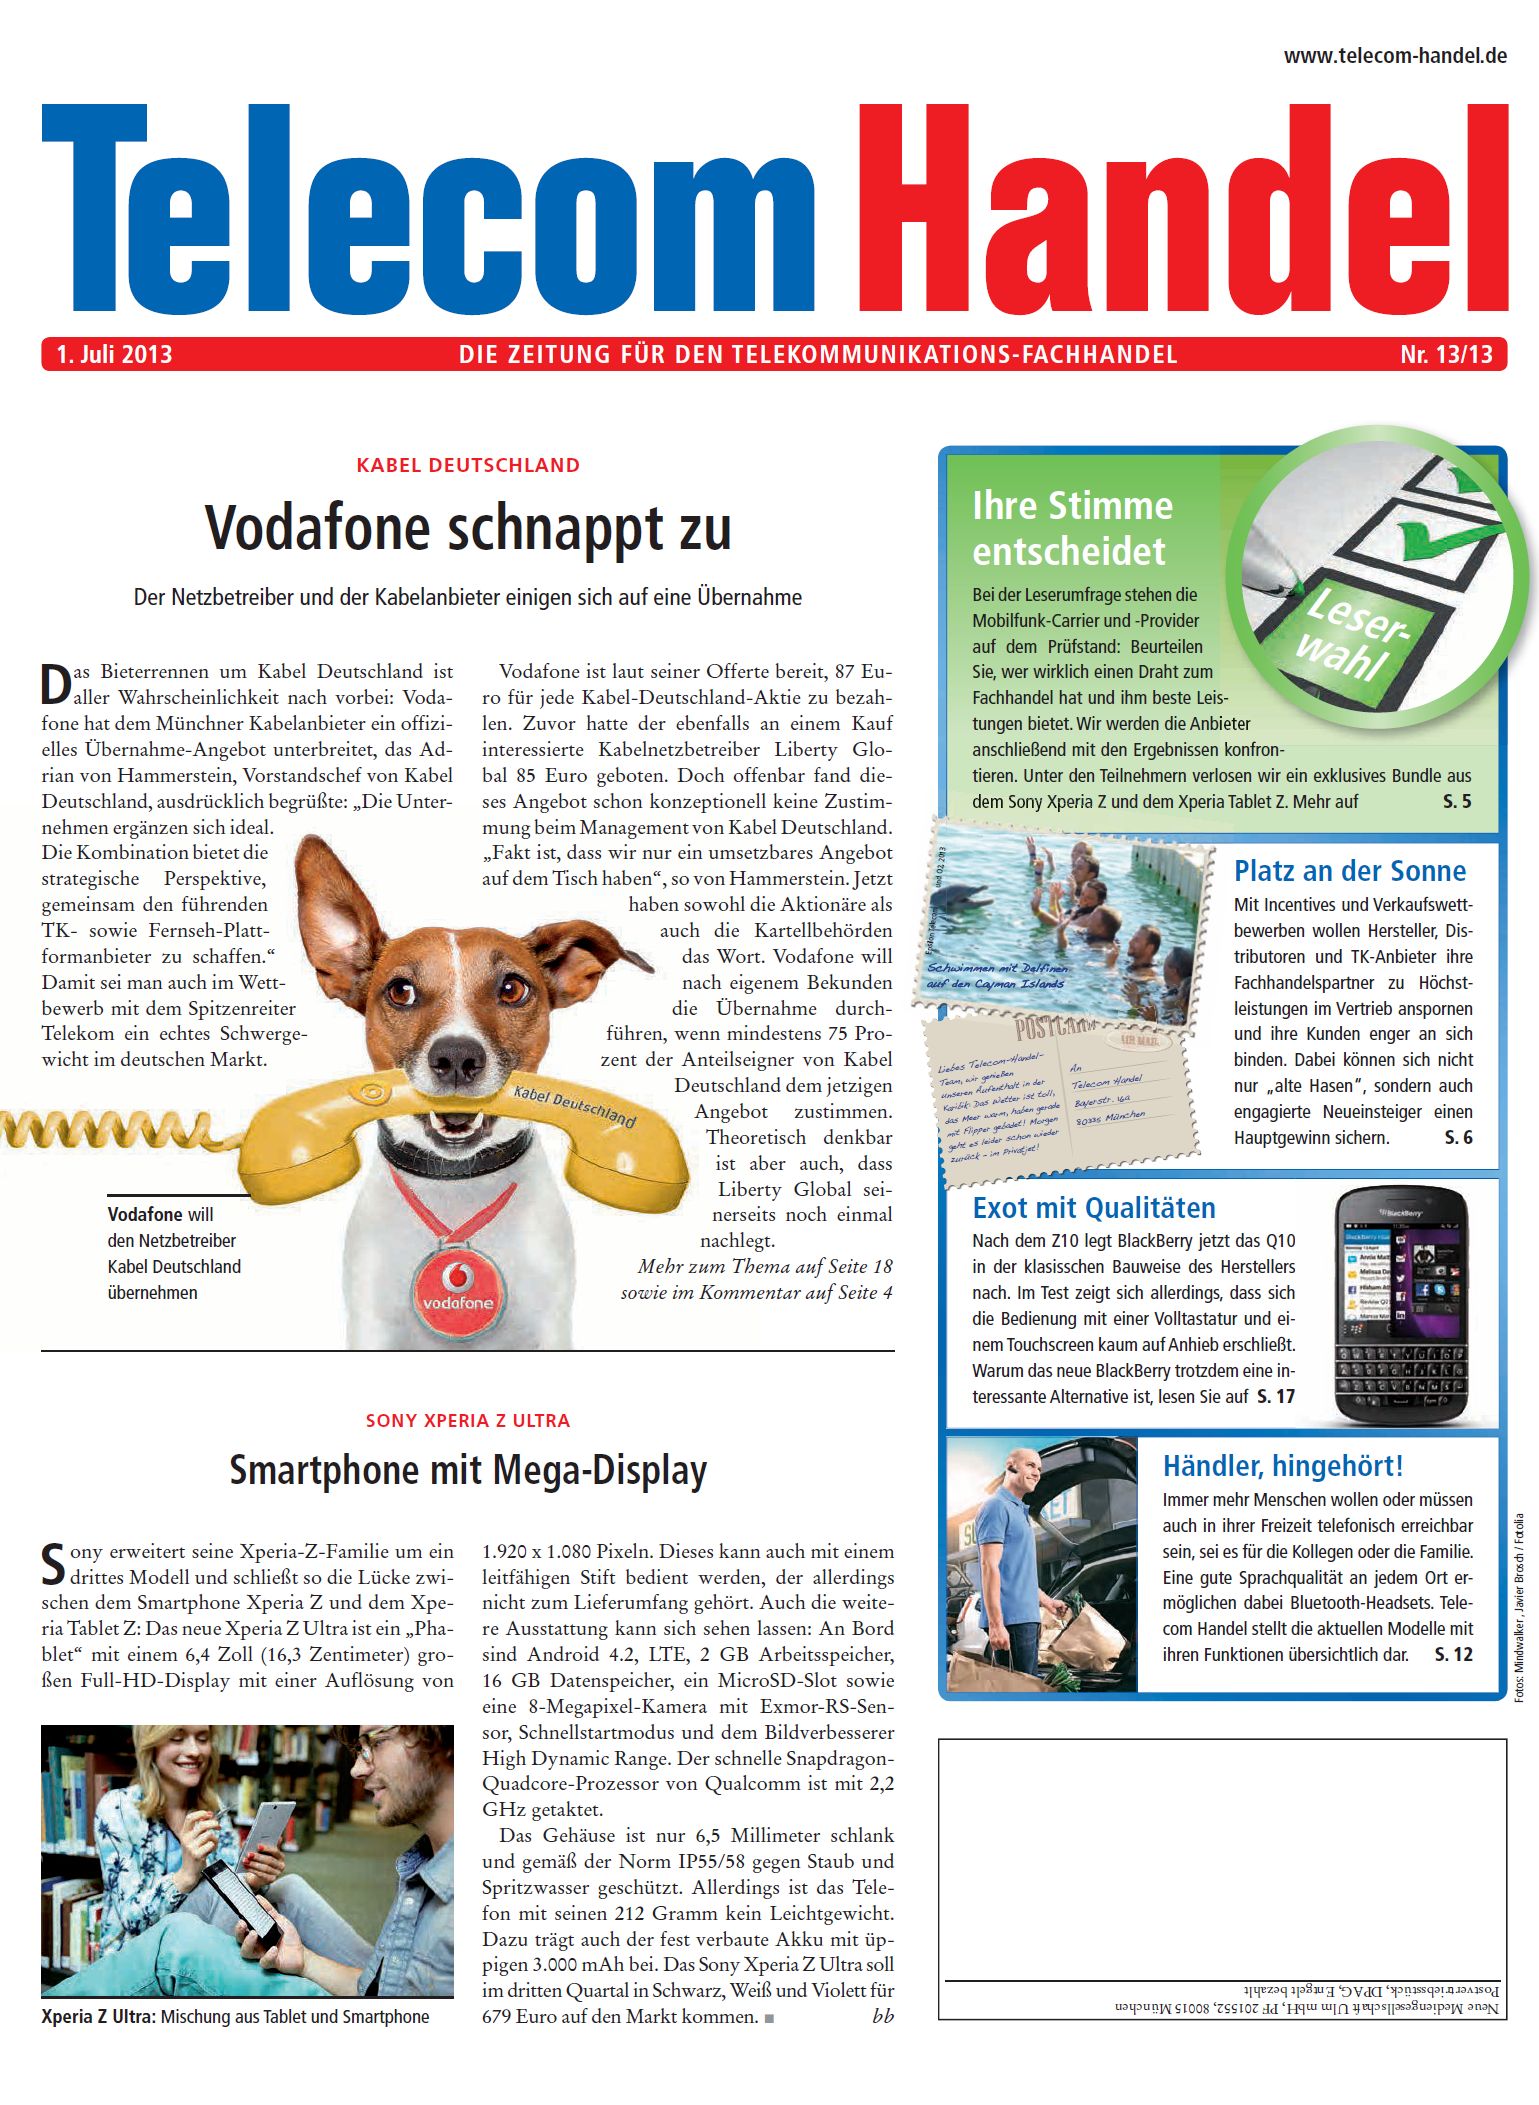 Telecom Handel Ausgabe 13/2013